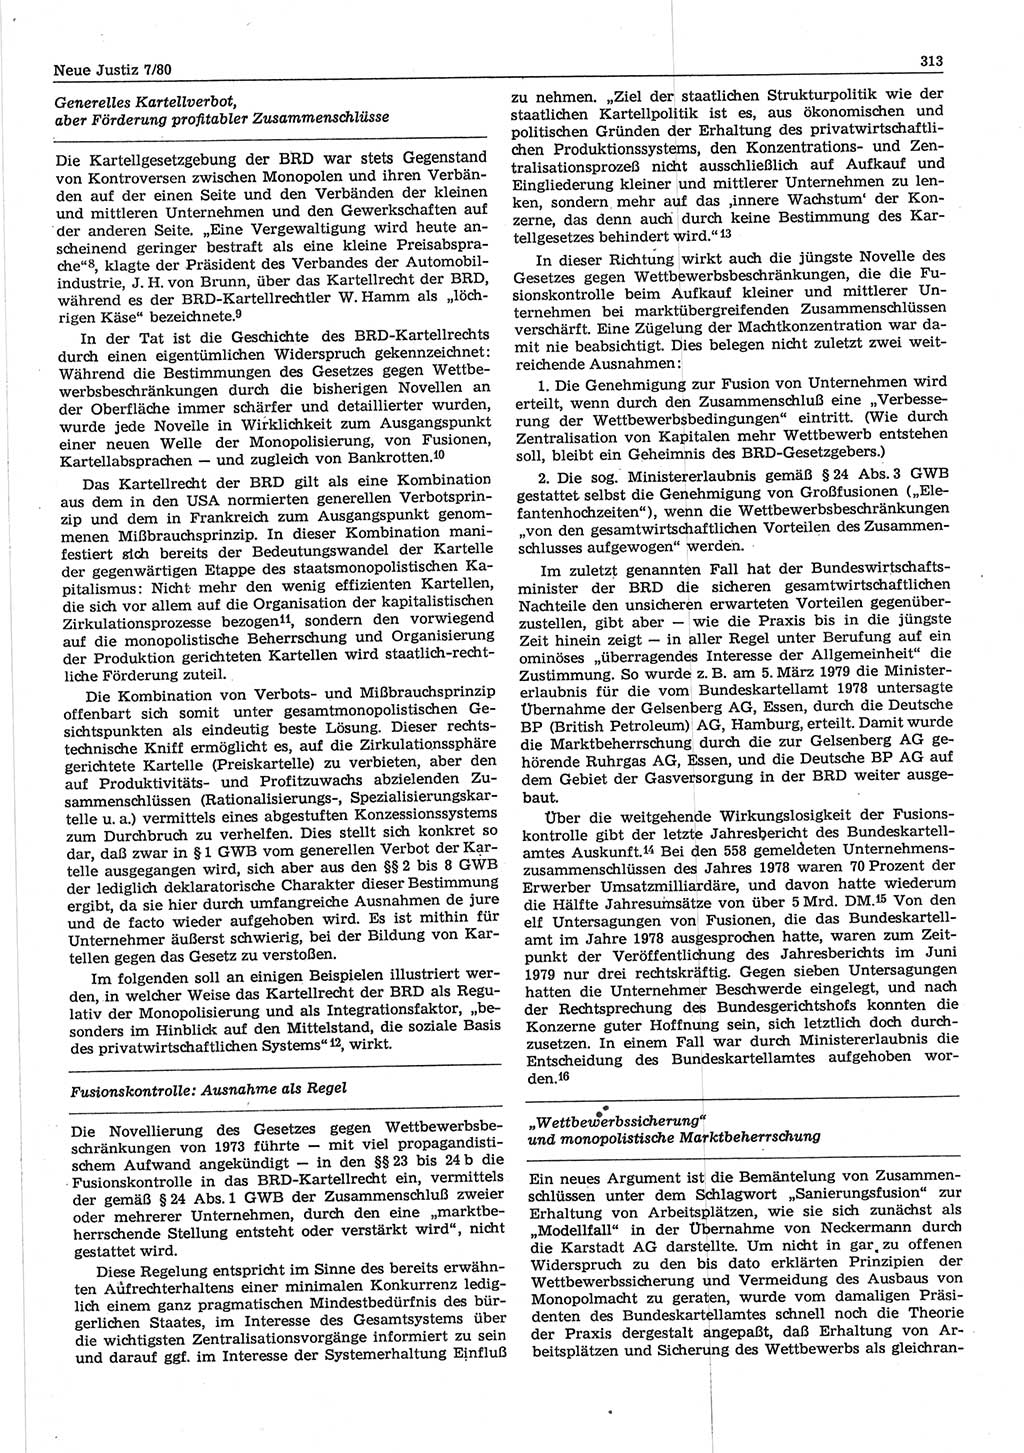 Neue Justiz (NJ), Zeitschrift für sozialistisches Recht und Gesetzlichkeit [Deutsche Demokratische Republik (DDR)], 34. Jahrgang 1980, Seite 313 (NJ DDR 1980, S. 313)